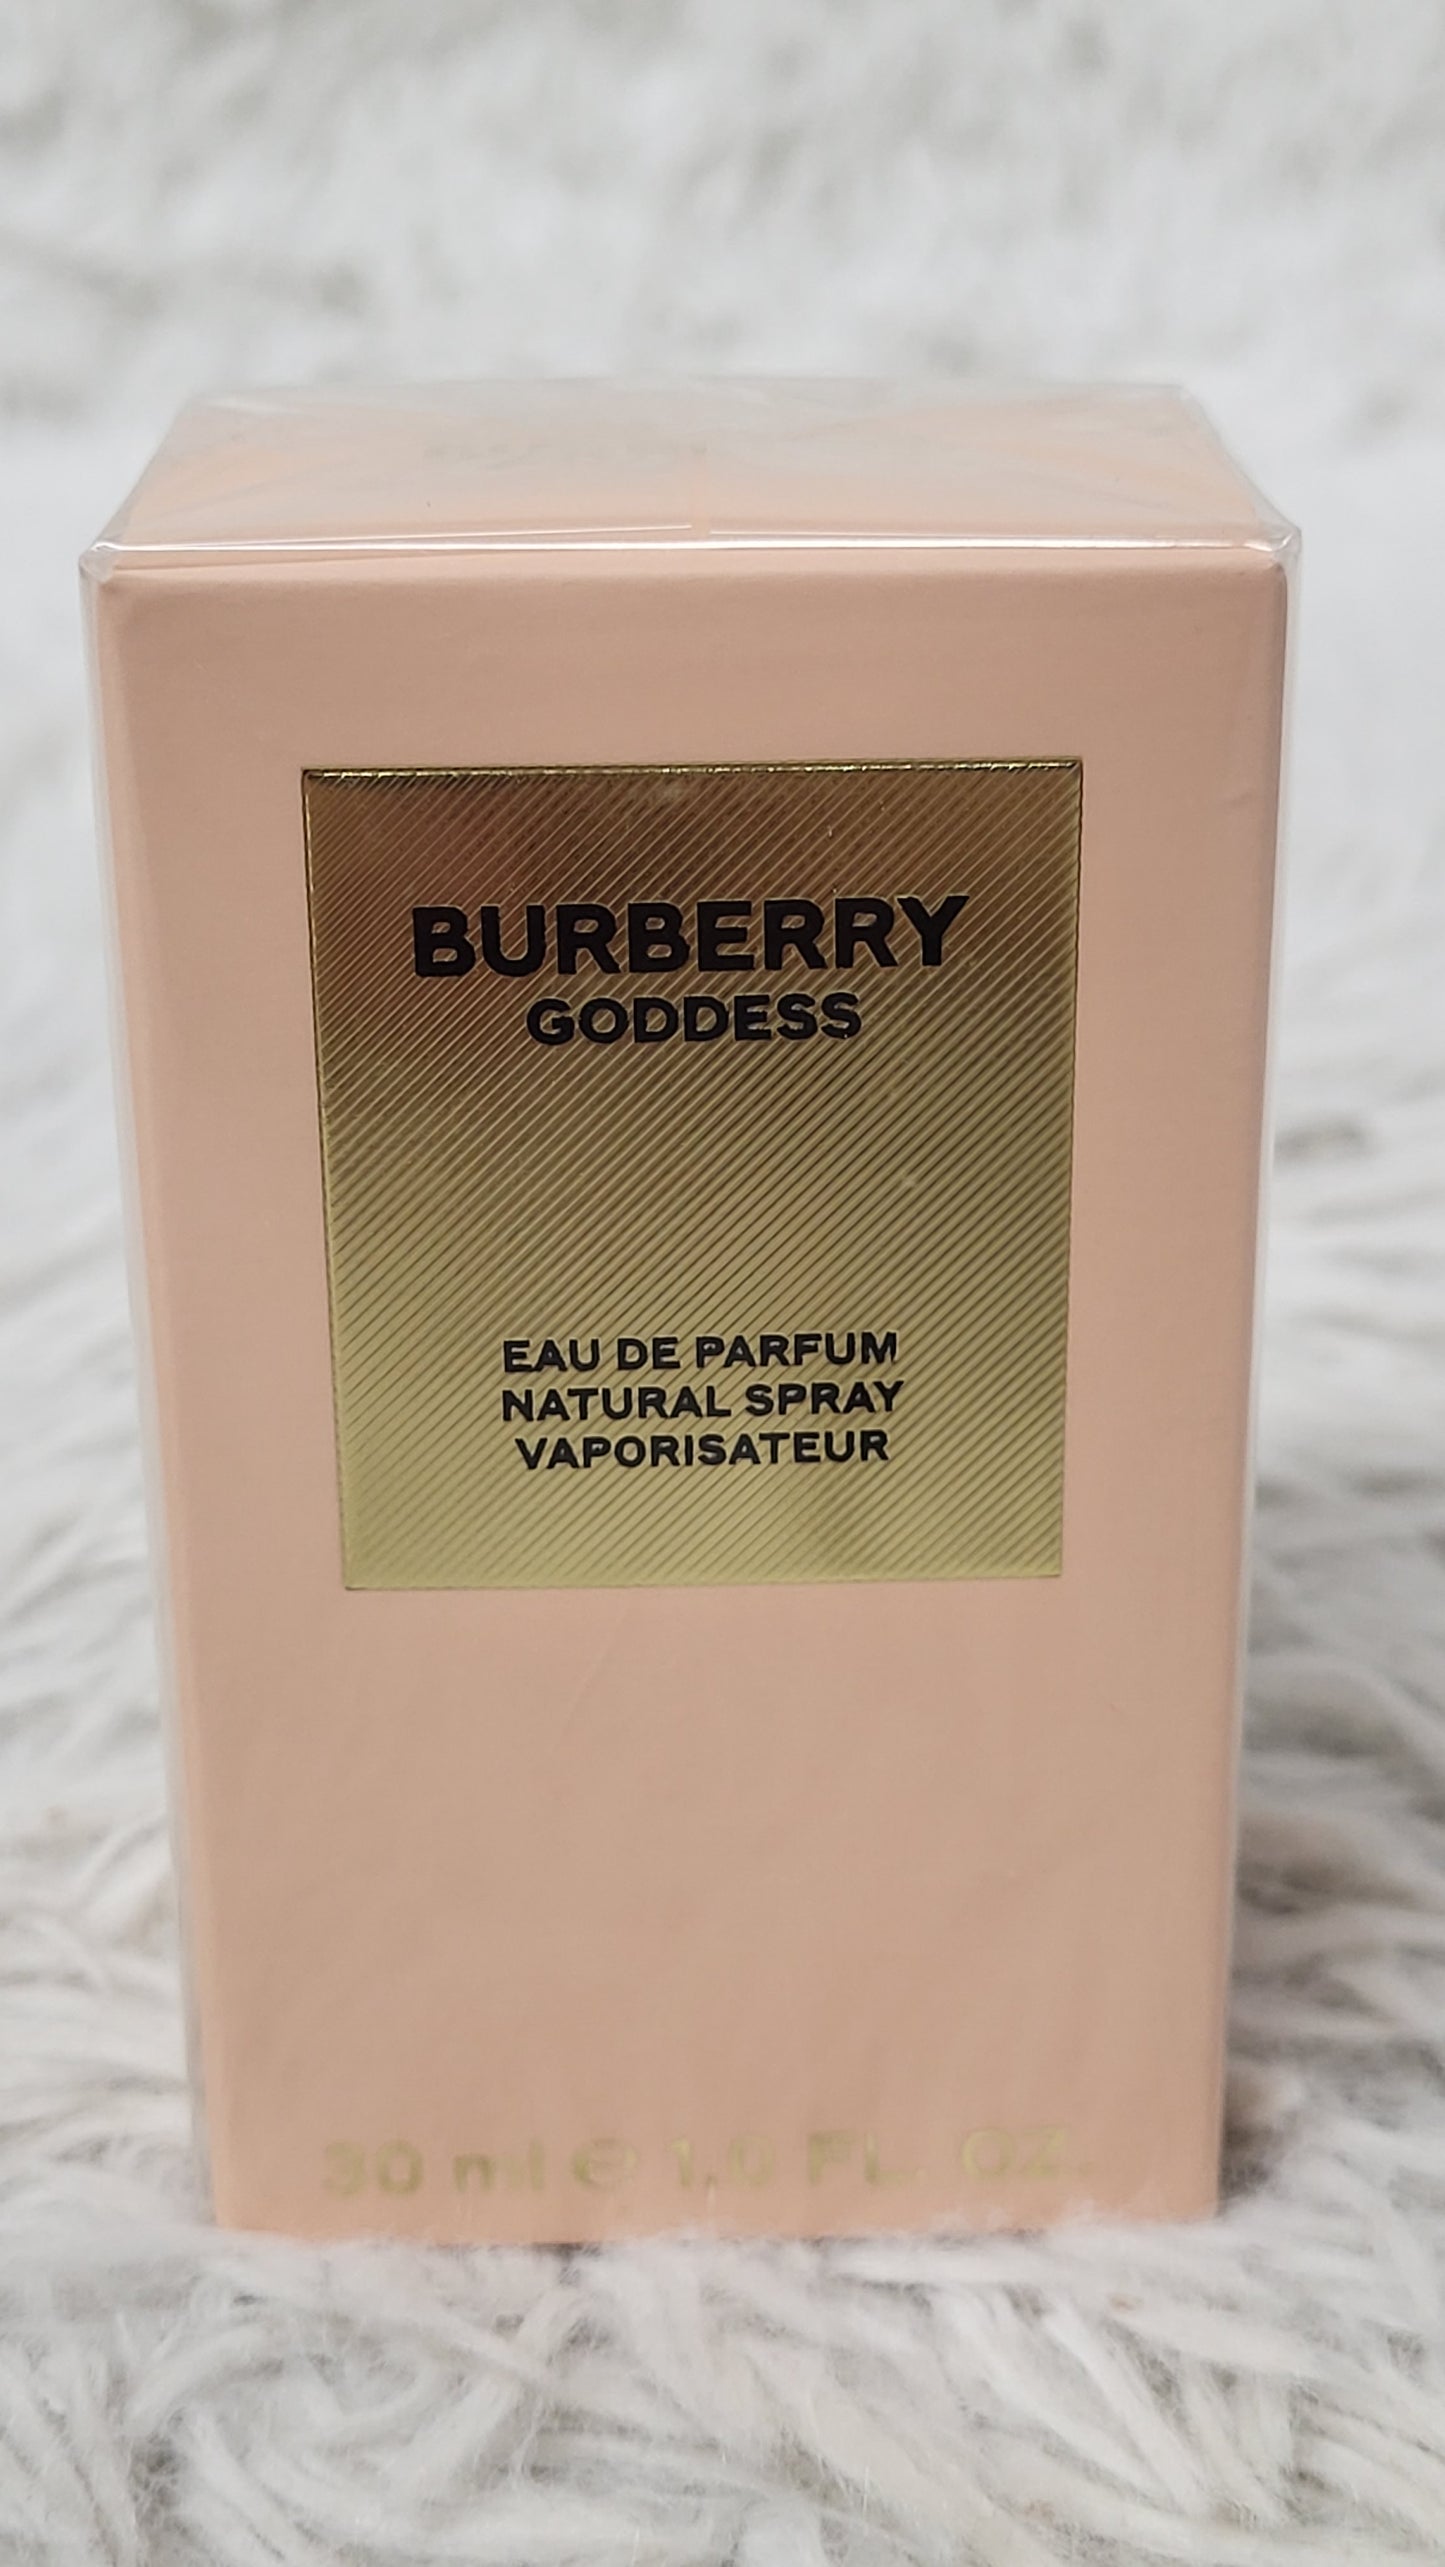 Burberry Goddess 30 毫升/1 盎司淡香水全新密封正品快速发货